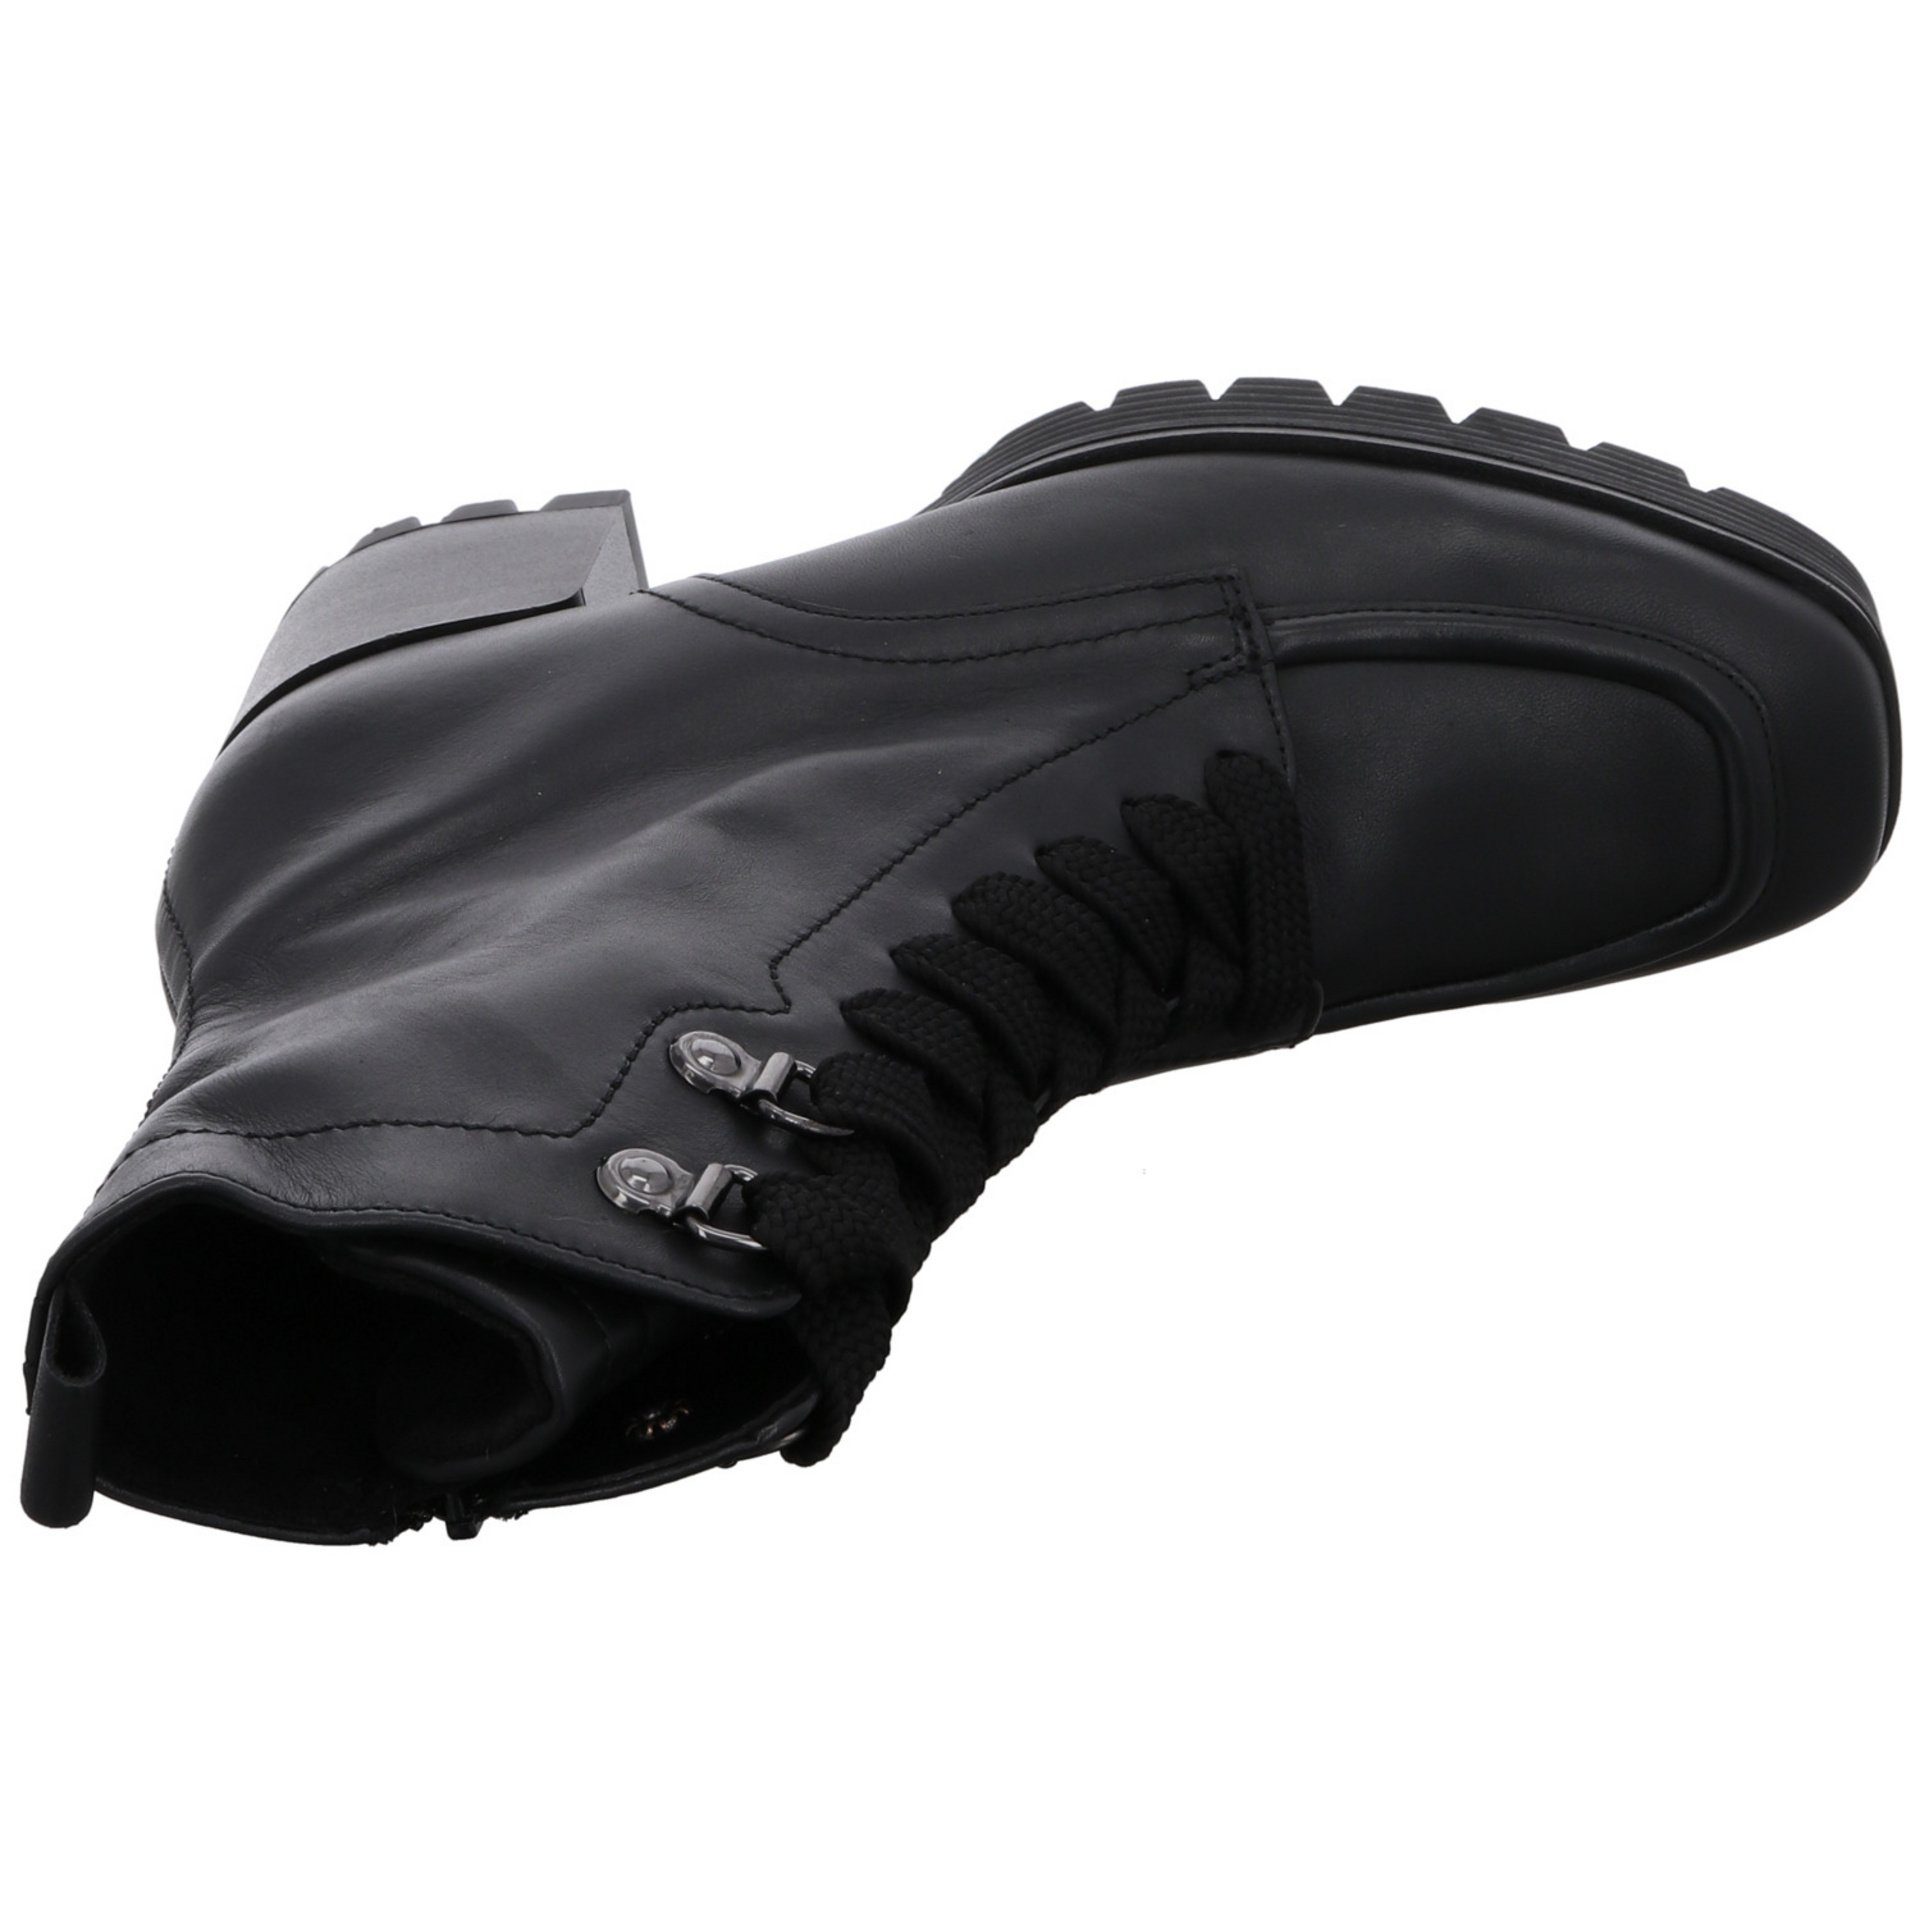 Gabor Damen Stiefeletten Schuhe Schnürstiefelette schwarz Schnürstiefelette (Micro) Veloursleder